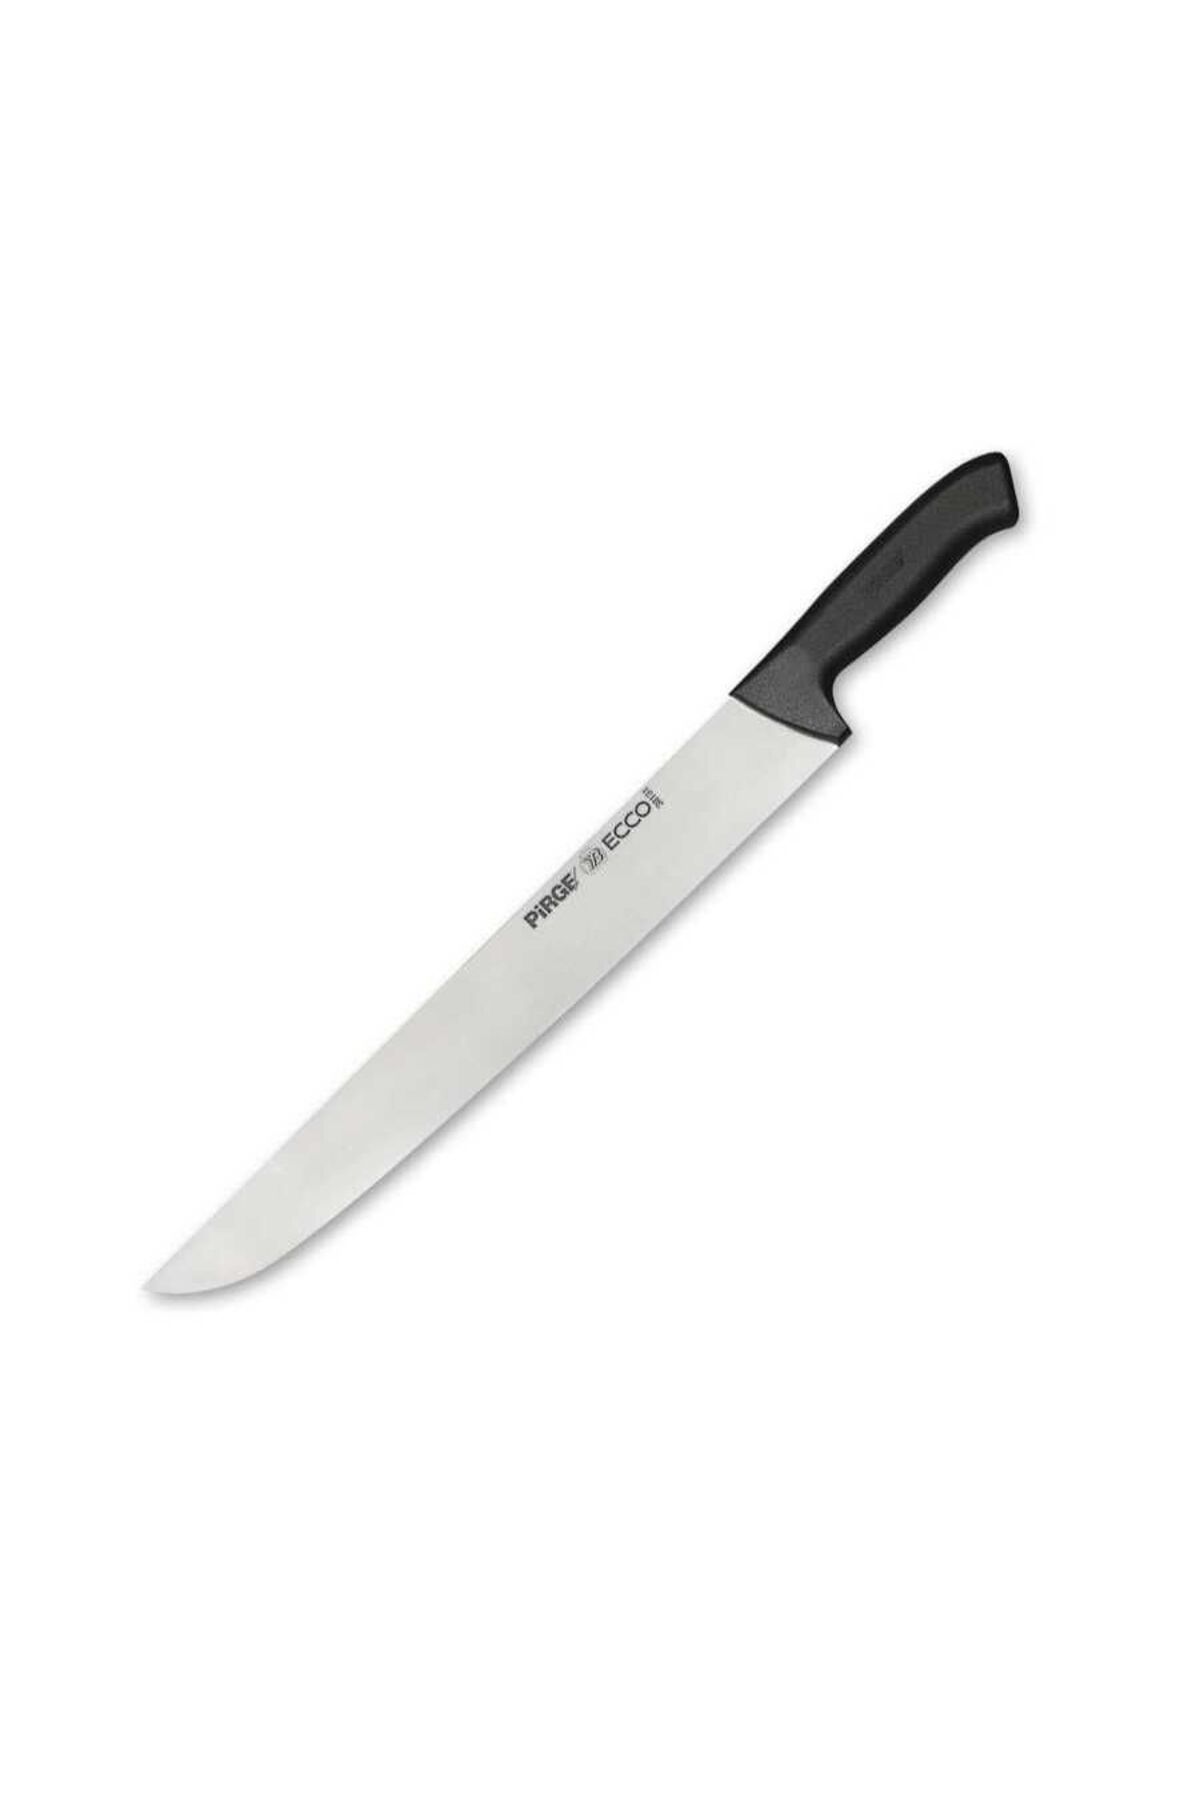 Pirge Pirge Ecco Sivri Şarküteri Bıçağı 35 Cm 38131